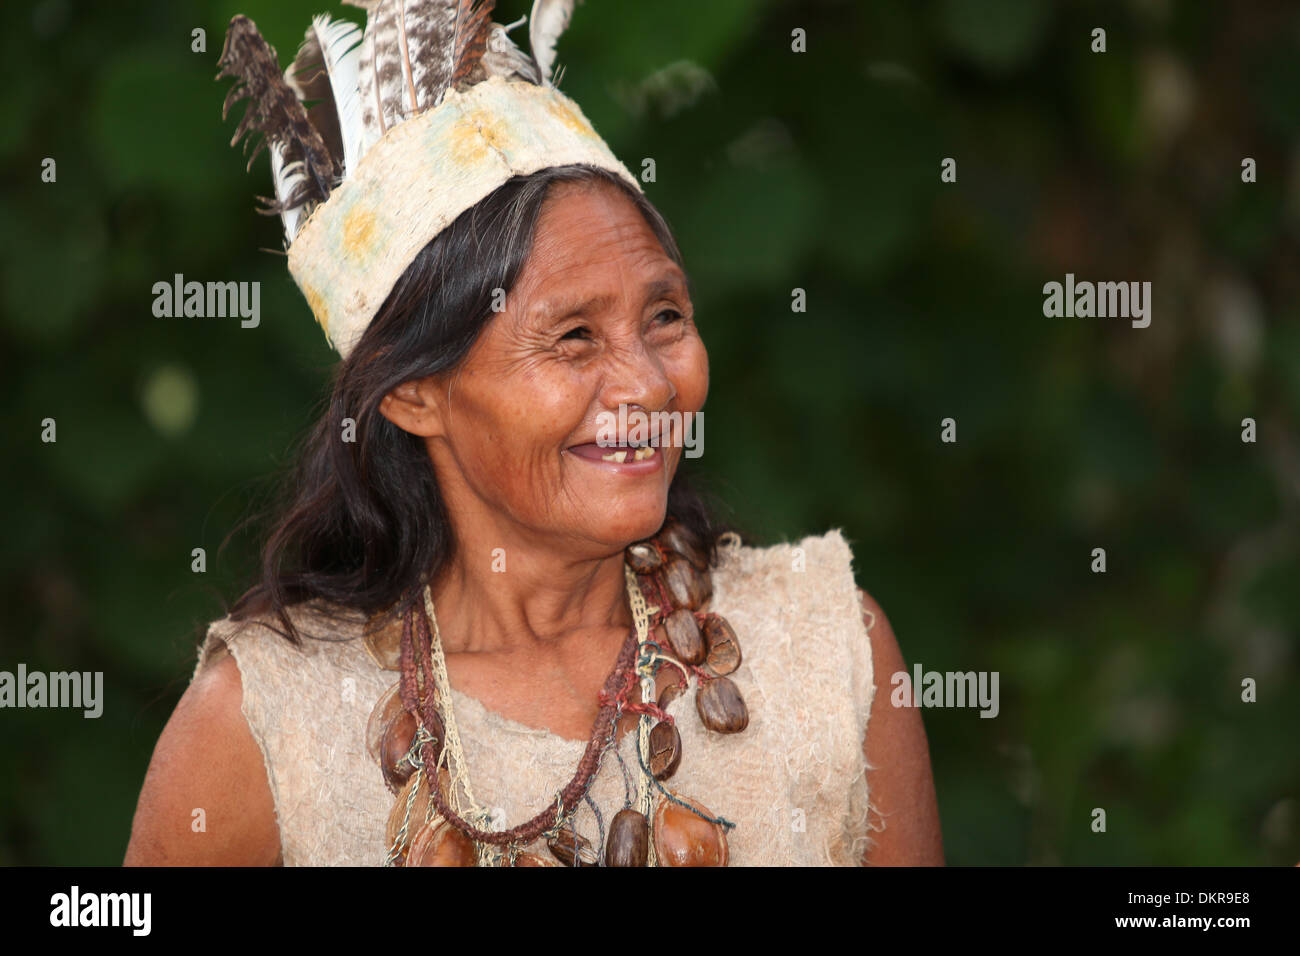 Indianer, Indigen, Amazon, Frau, Federn, traditionell, Kleidung, lachen,  Zahn, Zähne, alte Stockfotografie - Alamy